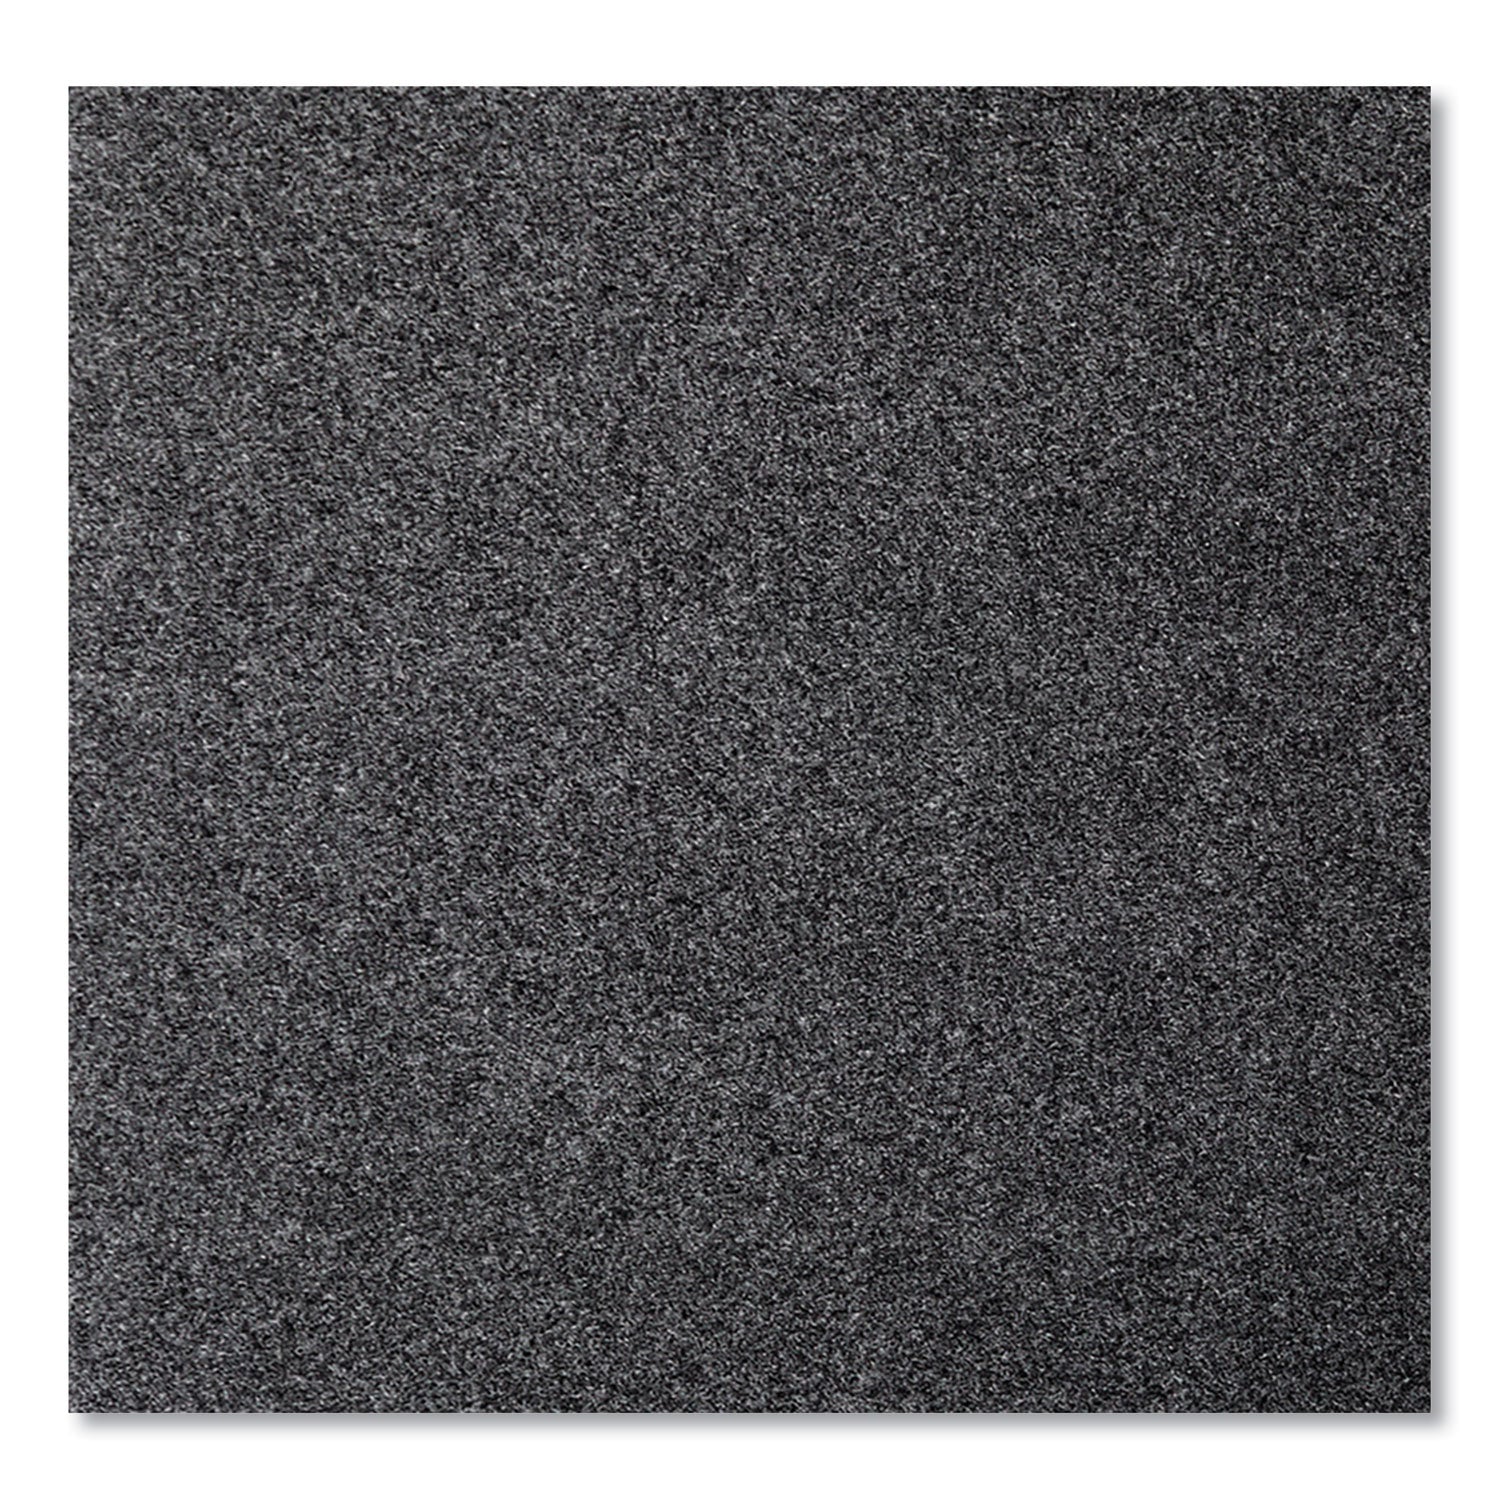 ecostep-wiper-mat-rectangular-36-x-48-charcoal_cwnet0034ch - 4